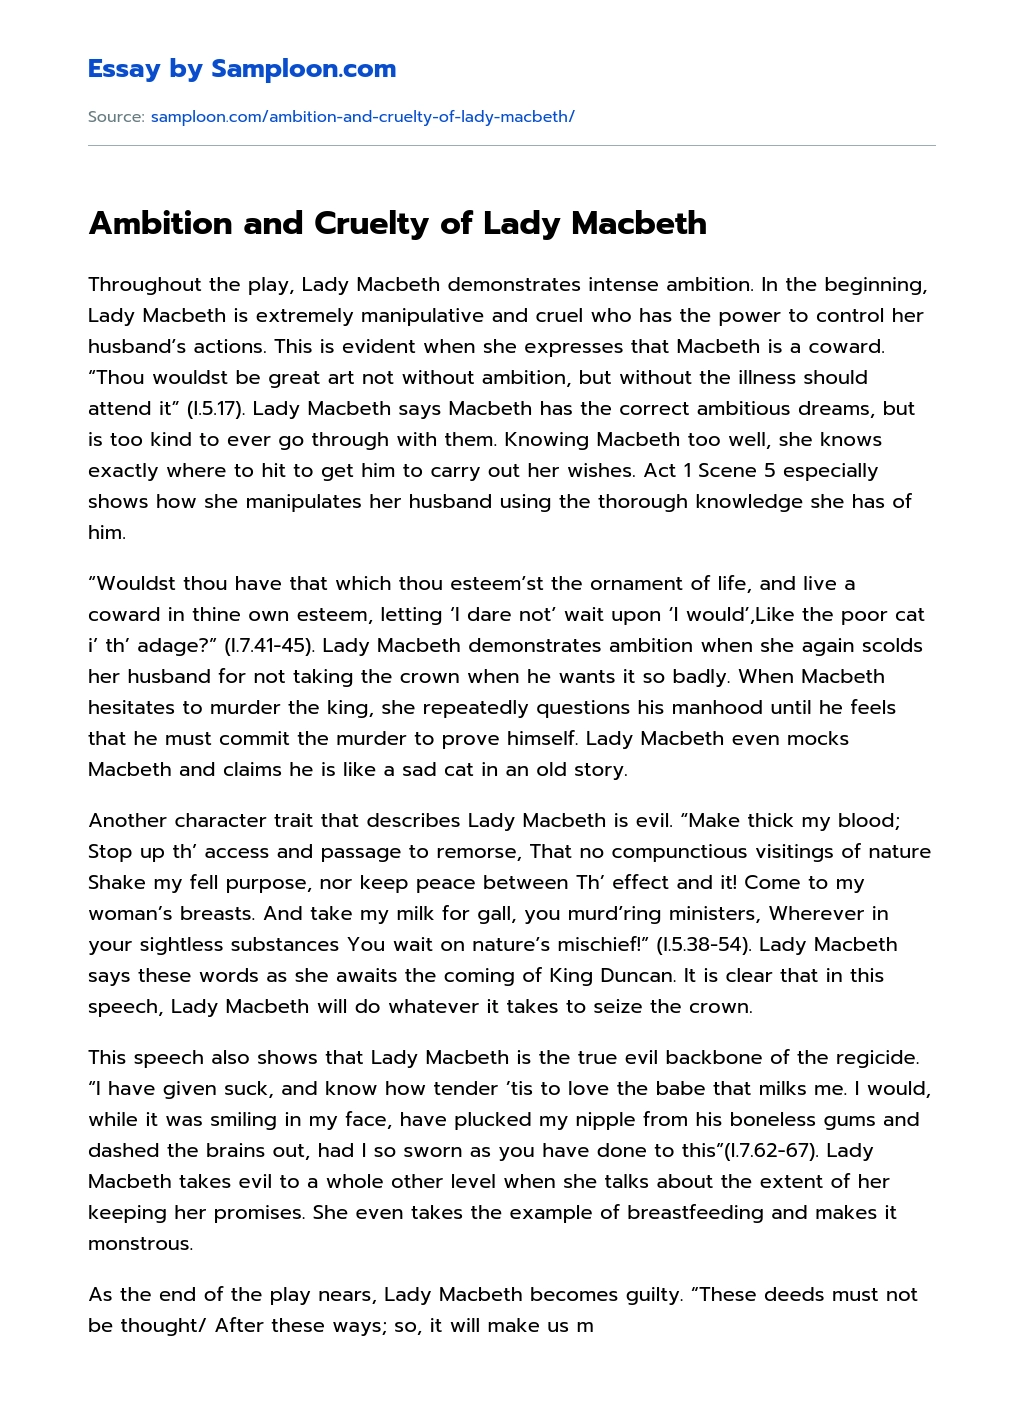 lady macbeth essay thesis